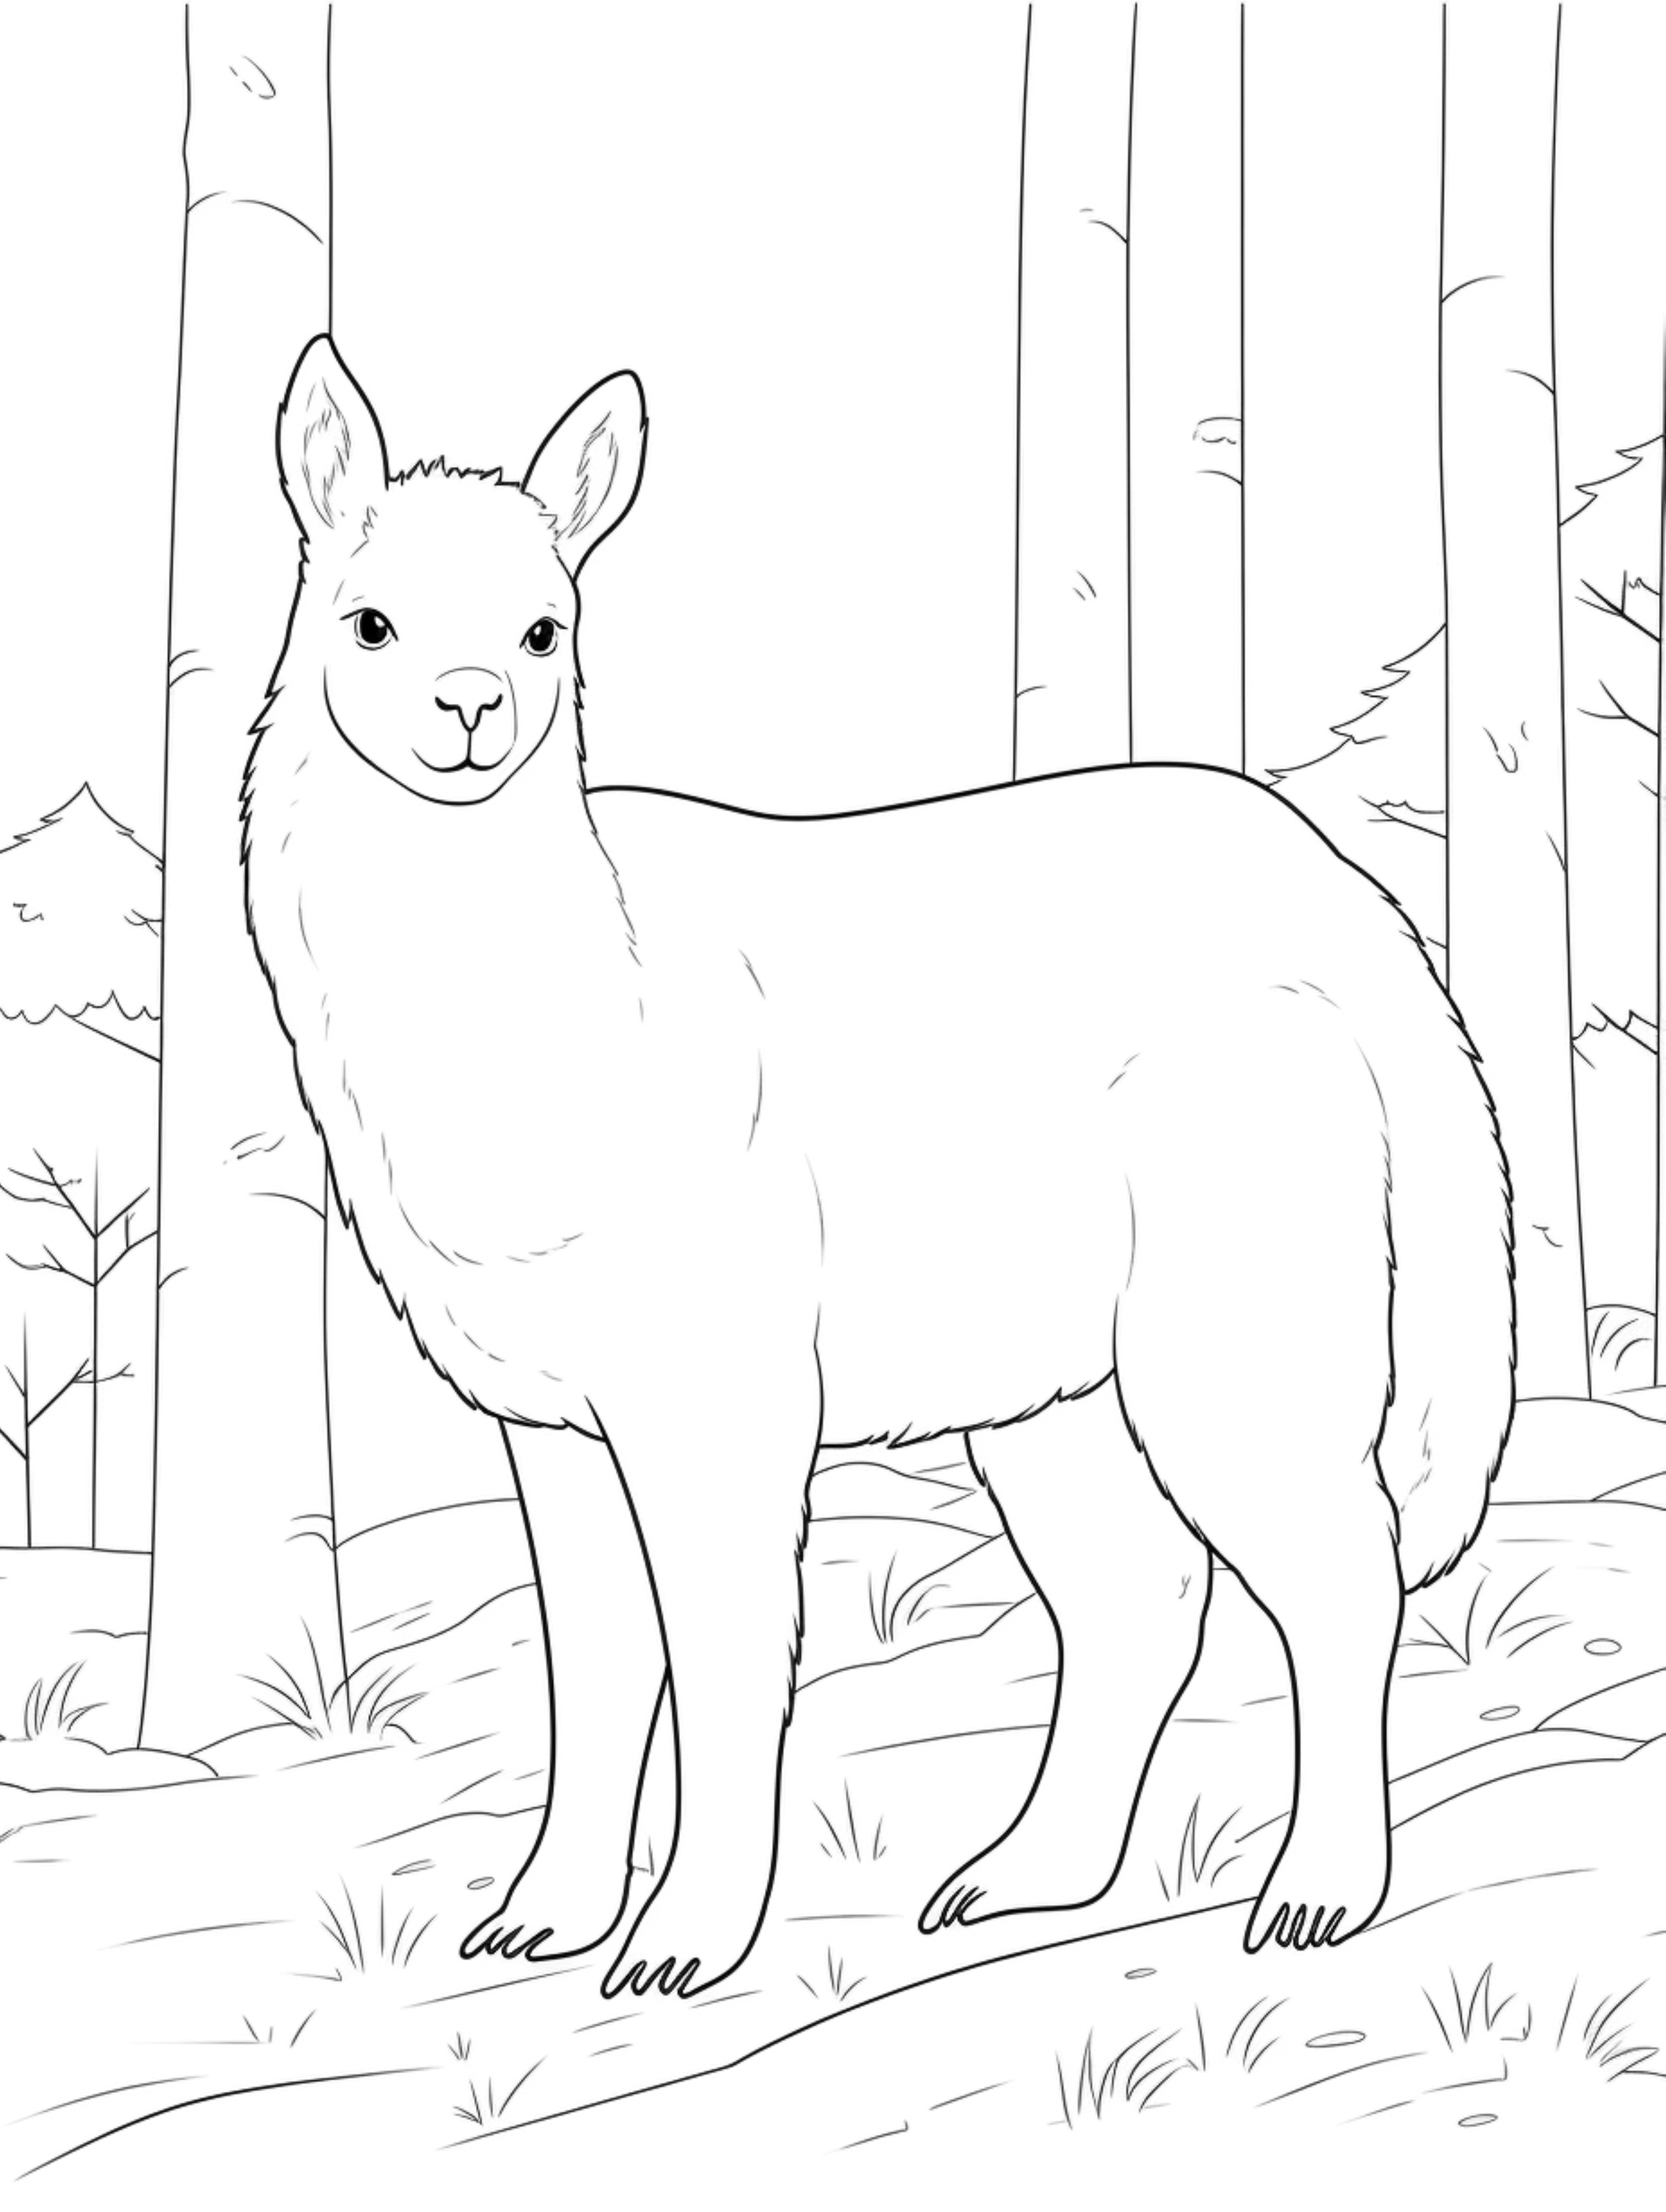 alpaca coloring page